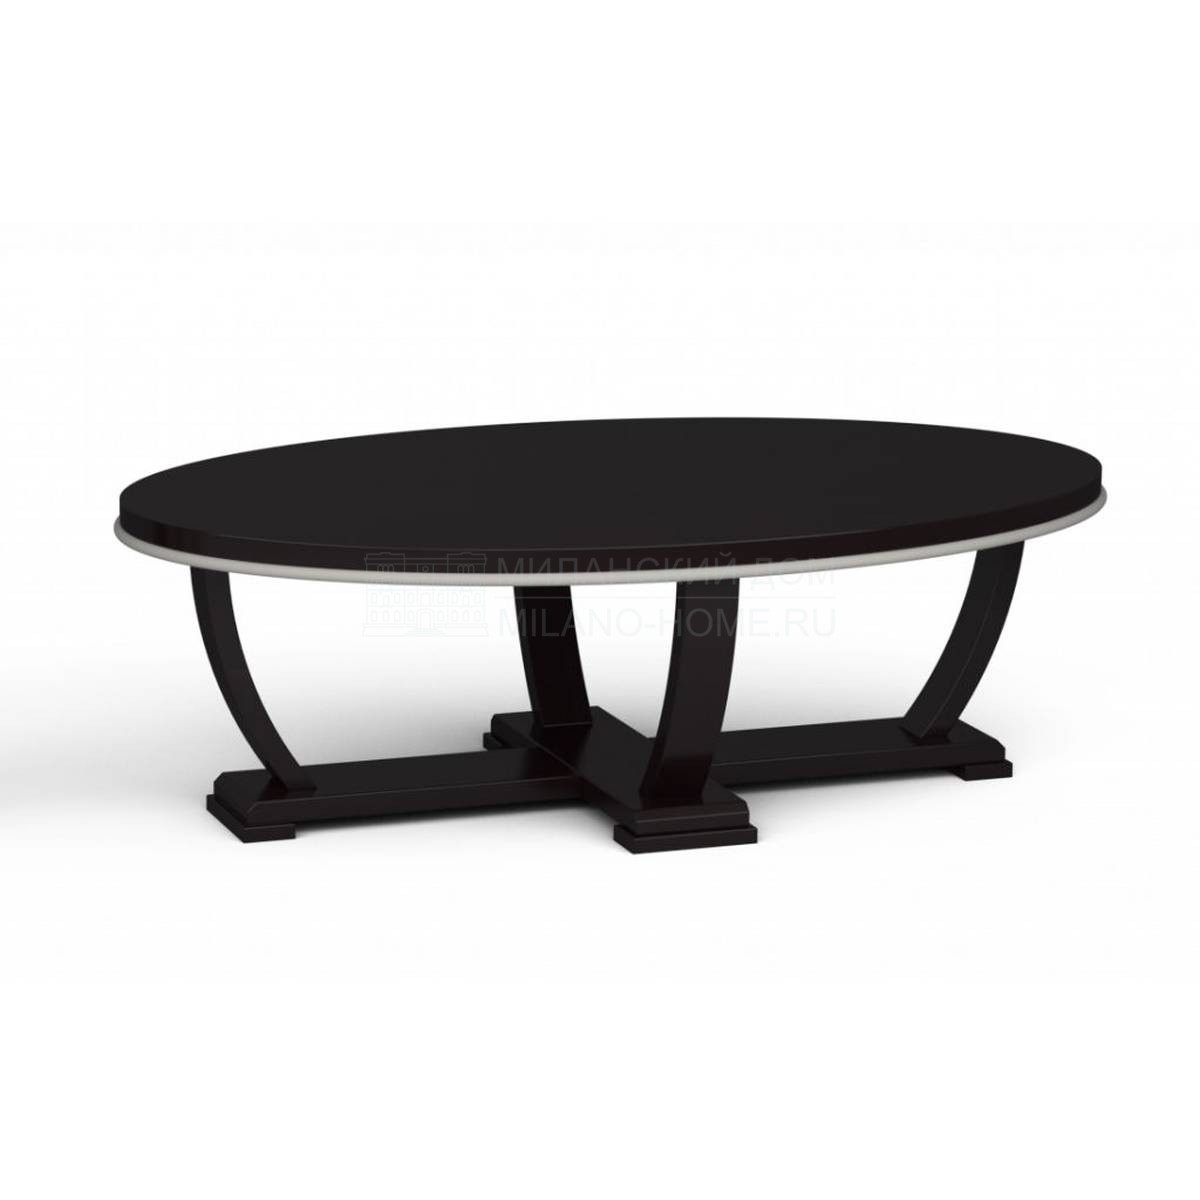 Кофейный столик V0503 oval coffee table из Италии фабрики LCI DECORA